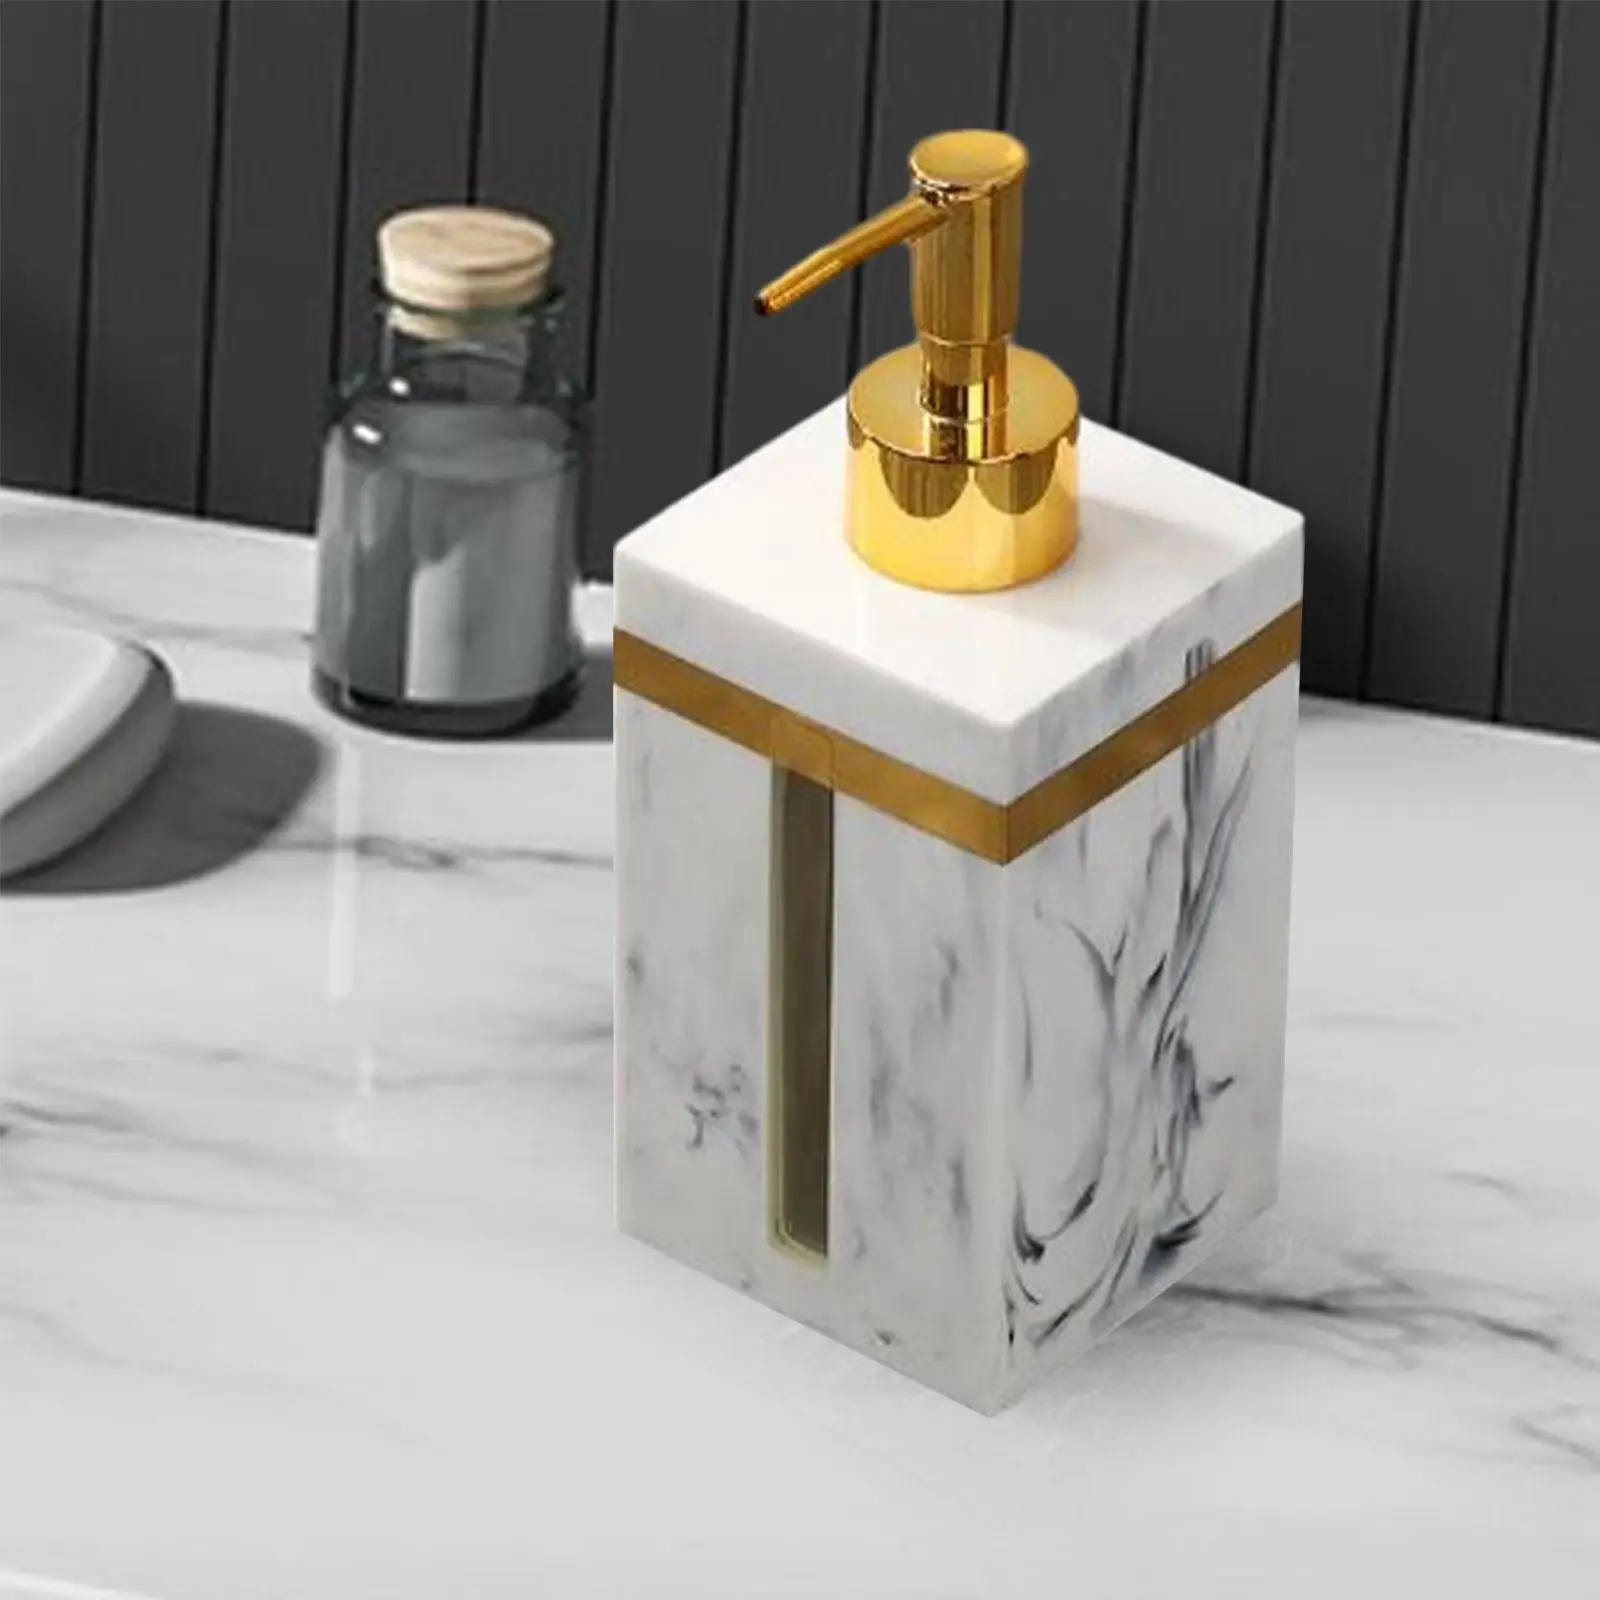 Lotion Dispenser Bottle Refill Resin Salon Dispenser Hand Soap Liquid Dispenser for Laundry Room Countertop Bathroom Home